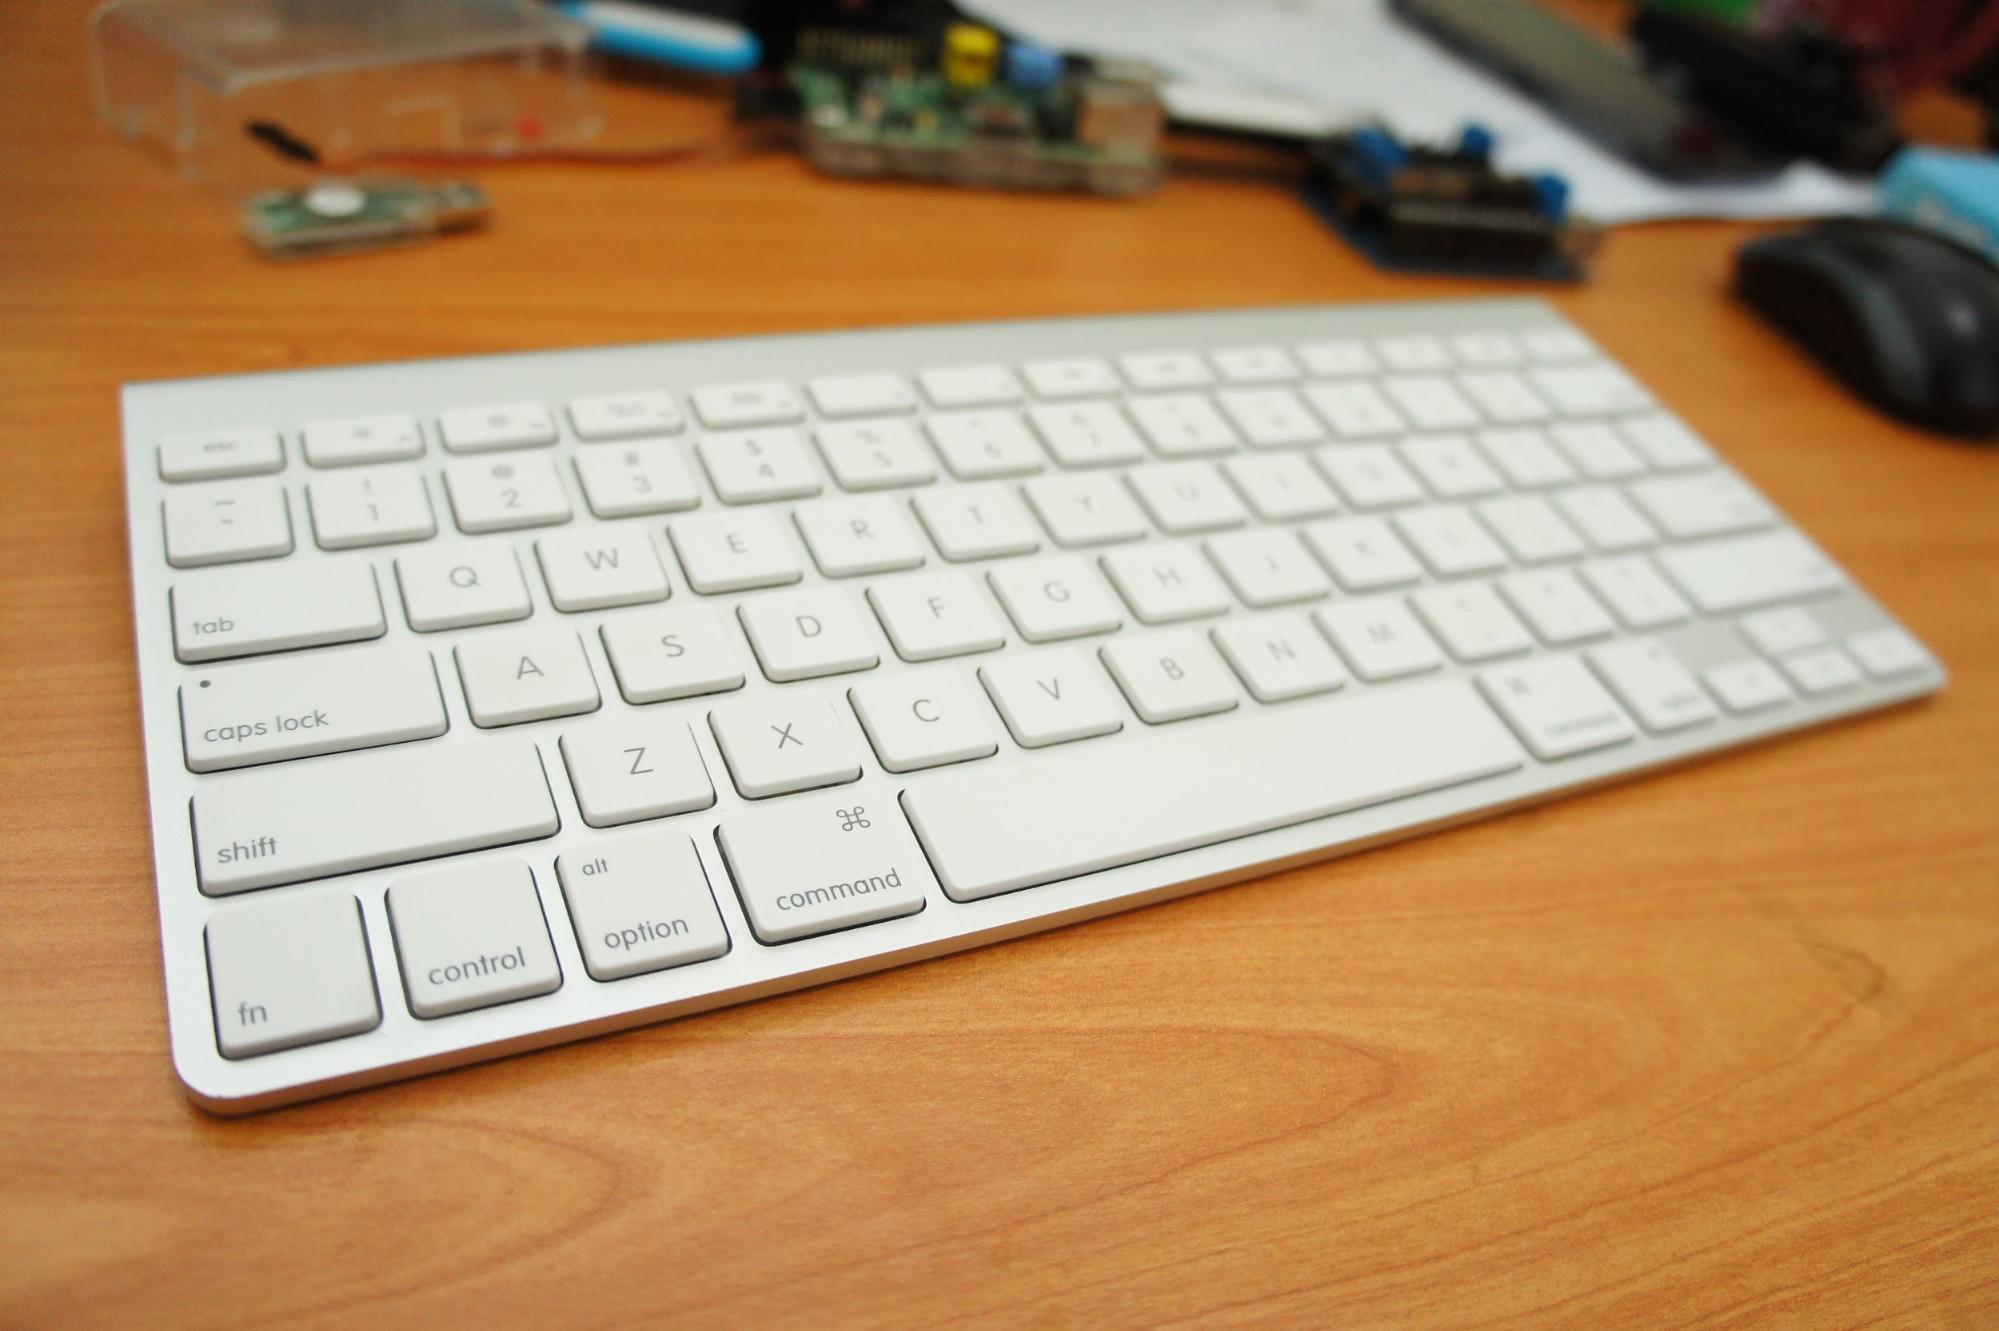 apple wireless keyboard update firmware pc windows